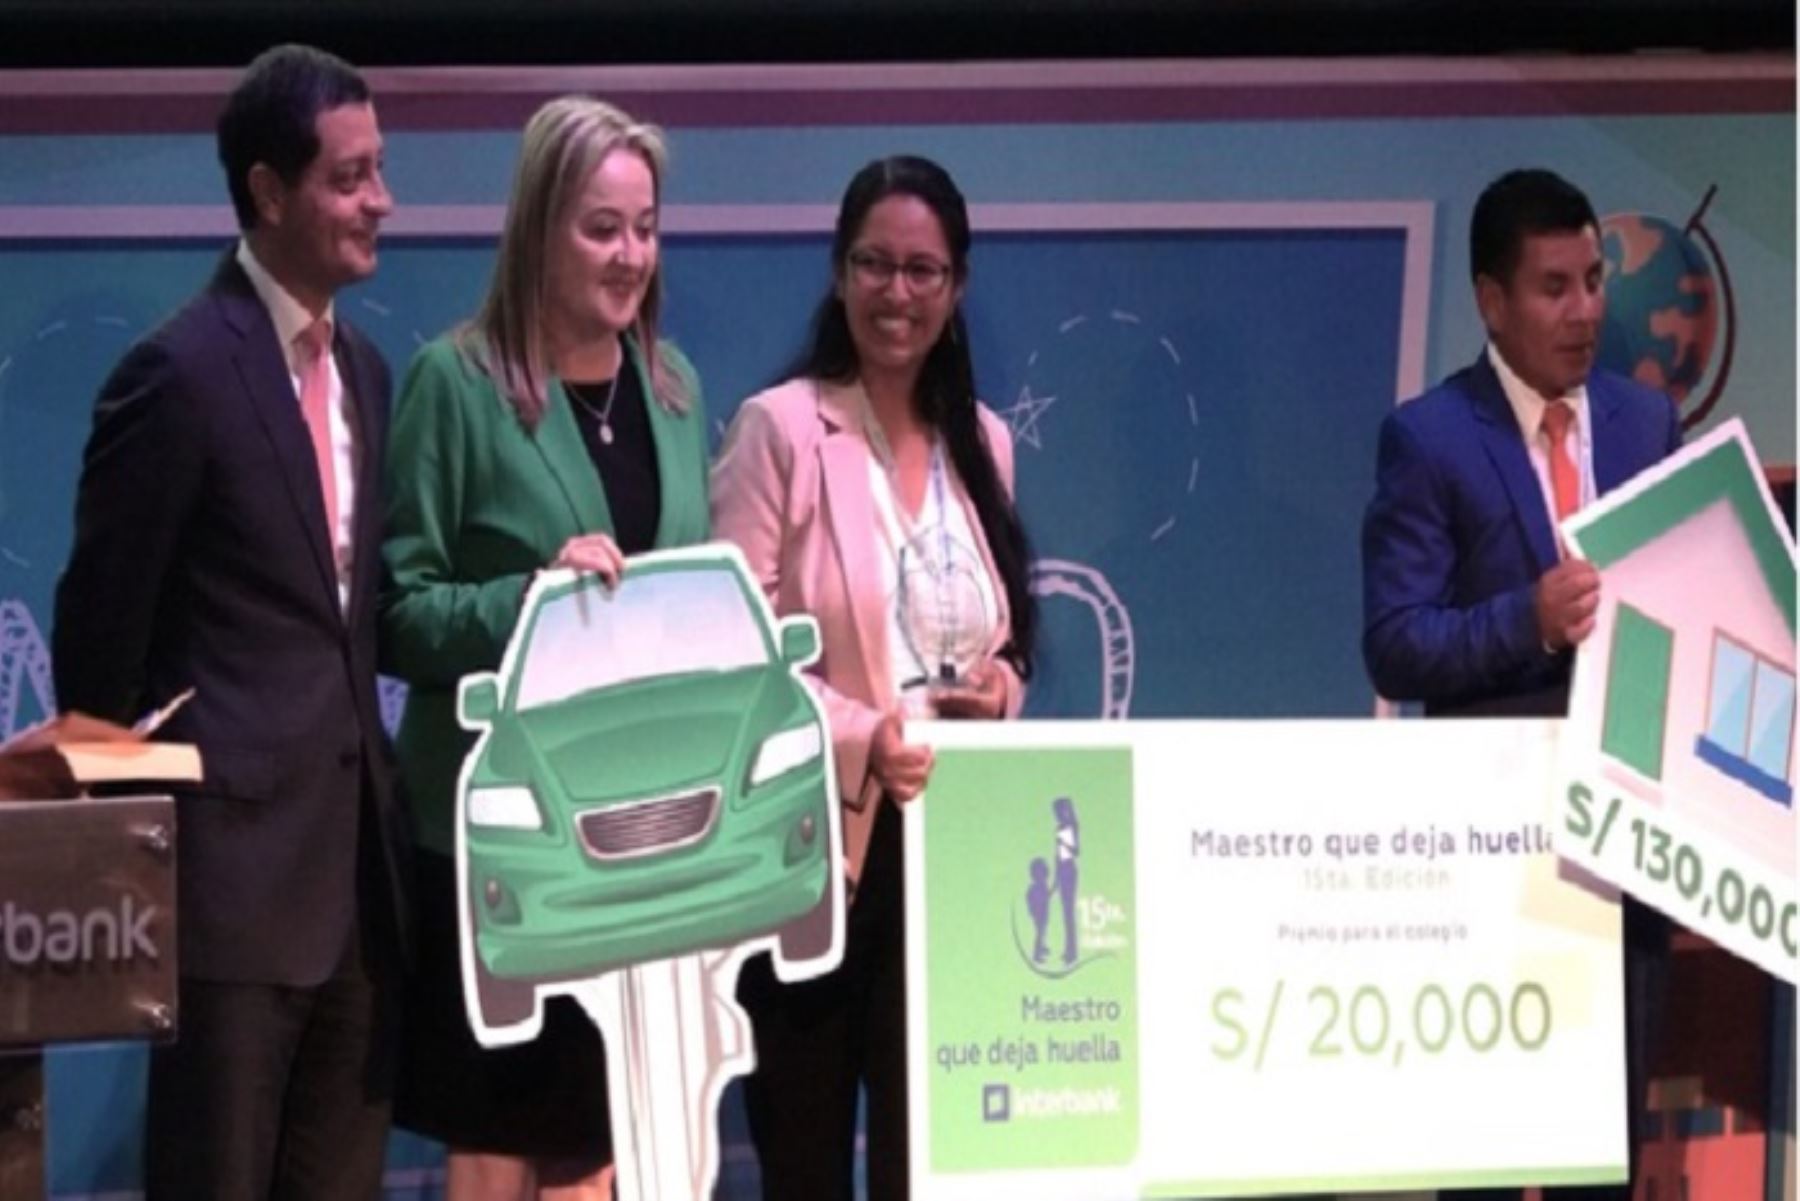 La maestra ganadora recibió como premio 130 mil soles para la cuota inicial de un departamento, un auto 0 kilómetros y una beca para una maestría,